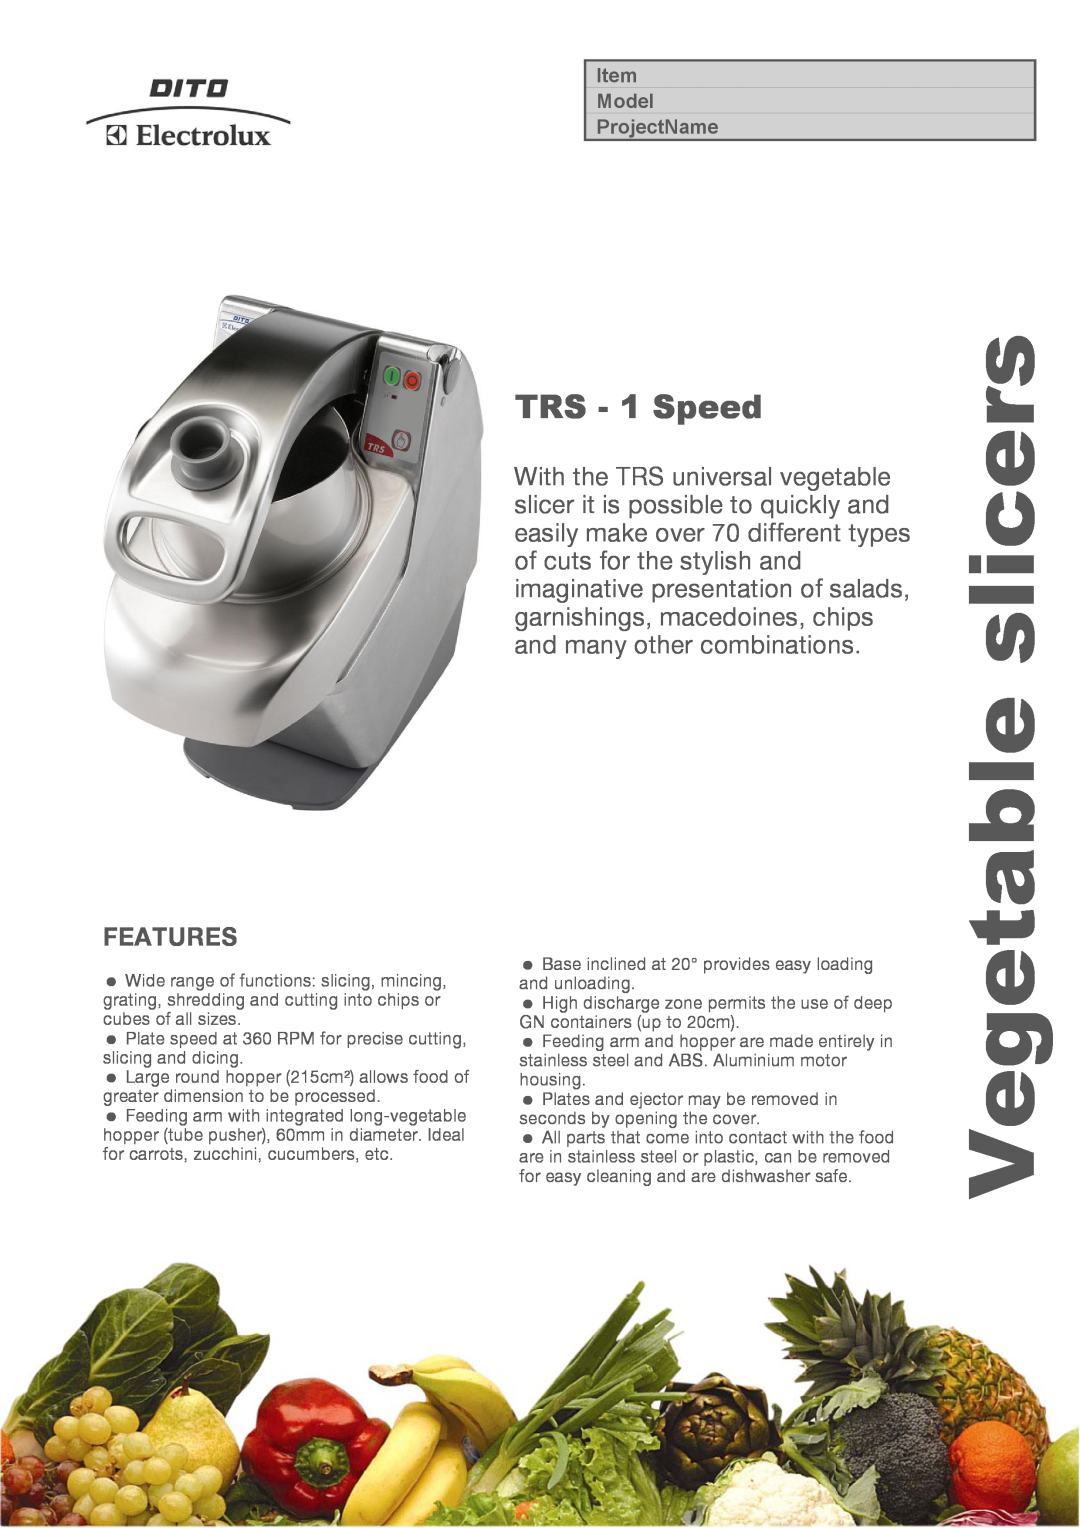 Electrolux TRS1V3716, TRS1V503, TRS1V5016, 603312 manual Features, Vegetable slicers, TRS - 1 Speed, Model ProjectName 